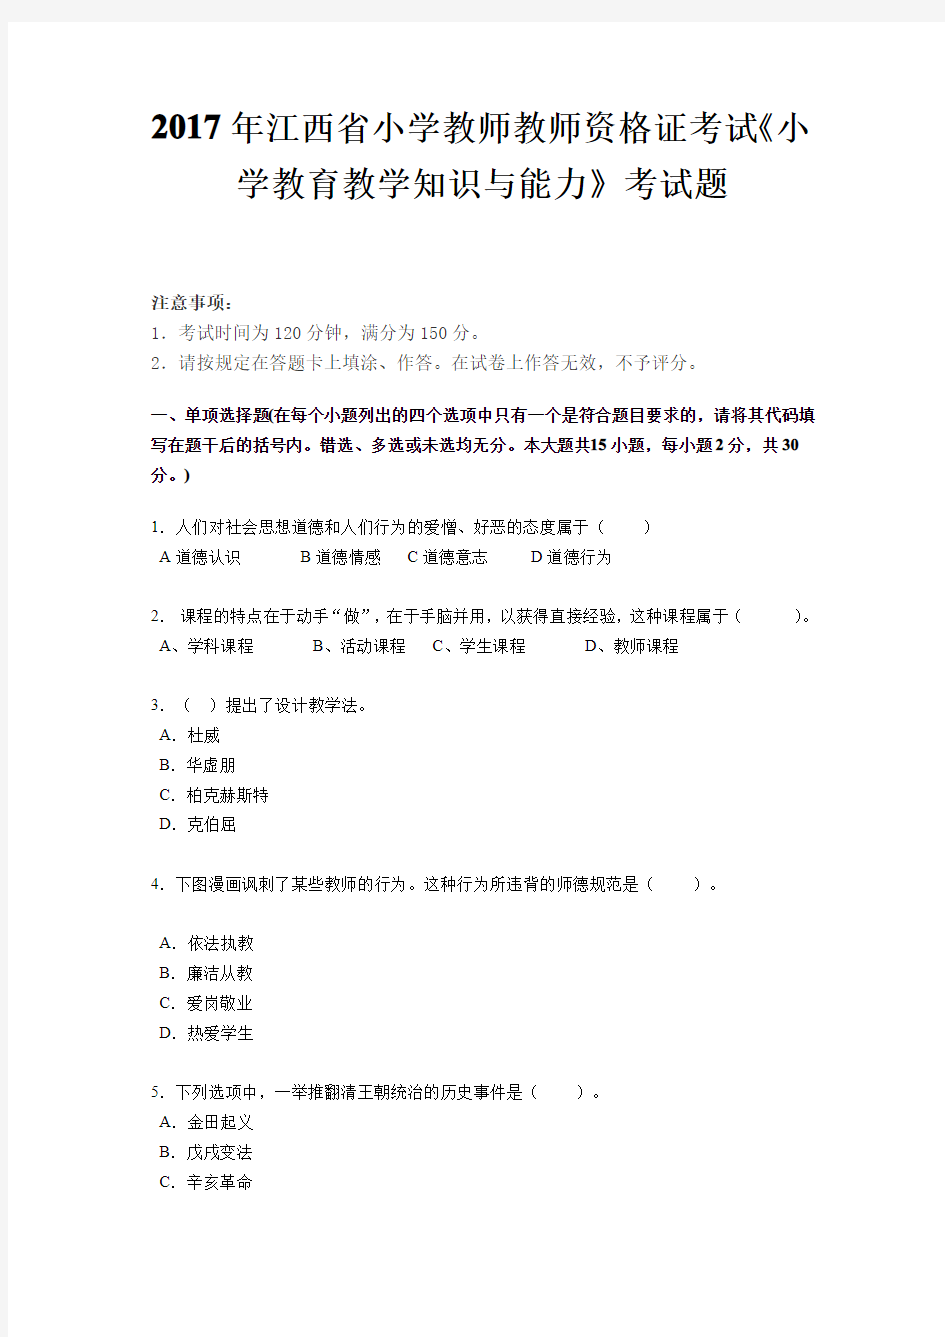 2017年江西省小学教师教师资格证考试《小学教育教学知识与能力》考试题